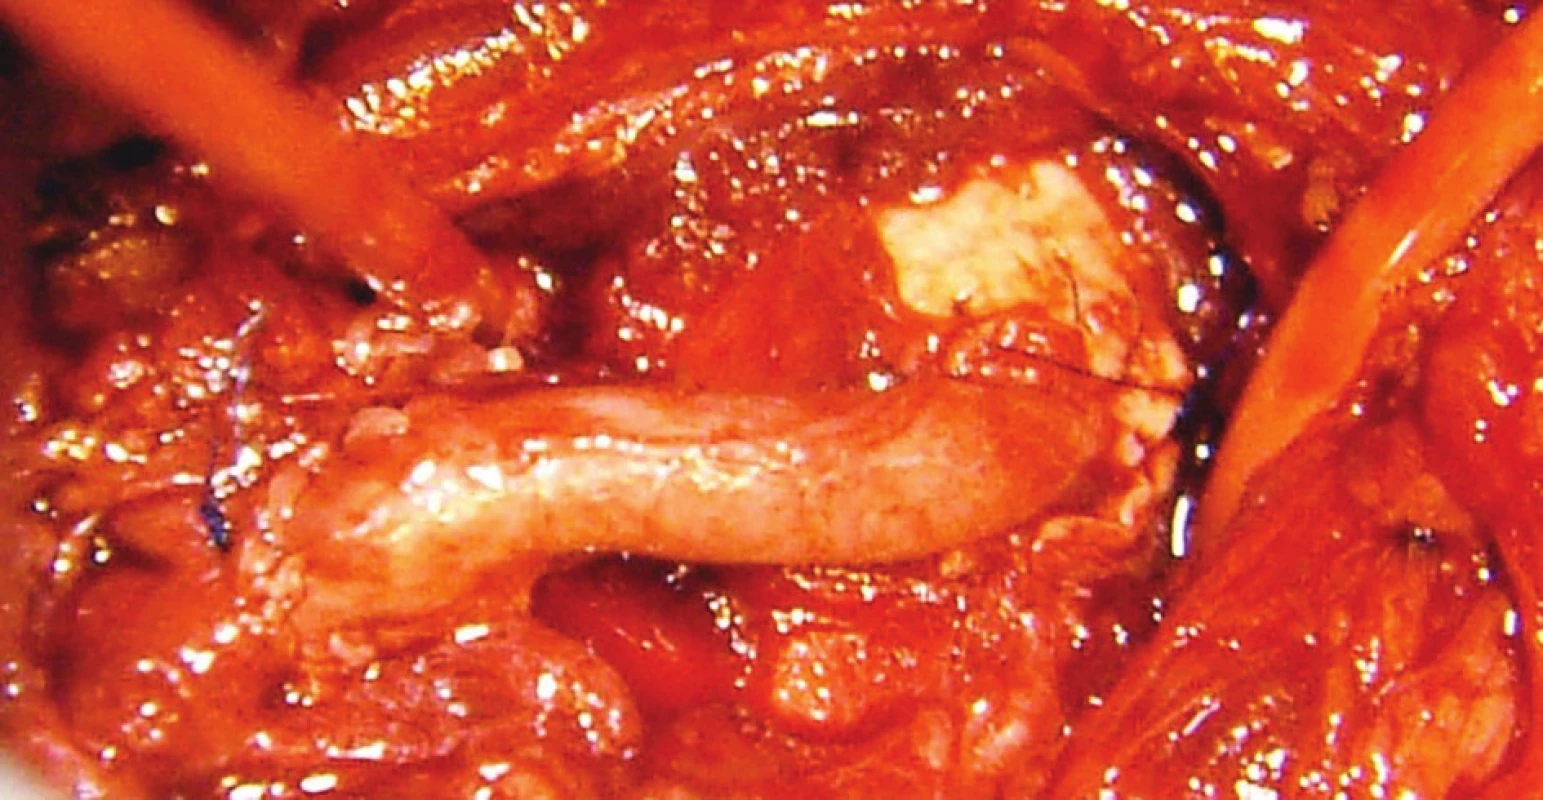 Aorto-trunkálny venózny bypass<br>
Fig. 3: Aorto-celiac venous bypass